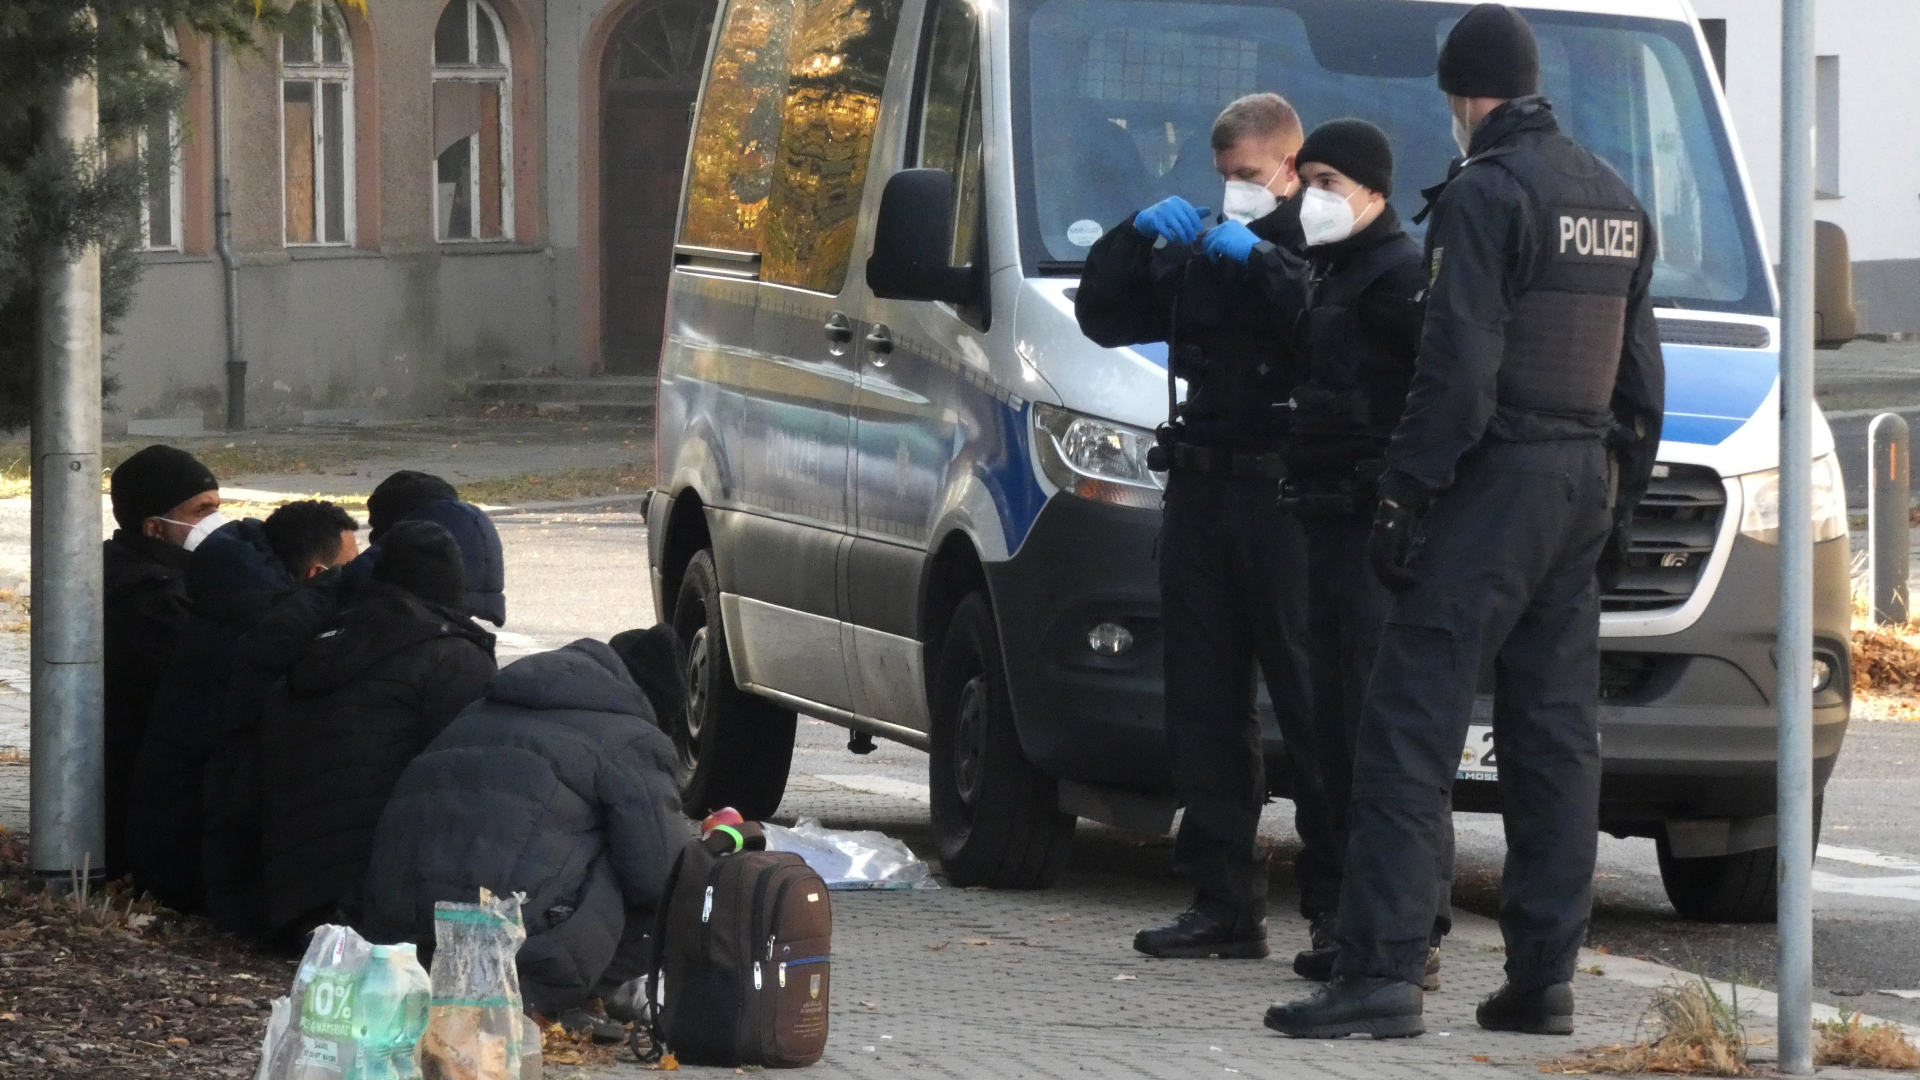 Bundespolizisten stehen an einem Polizeifahrzeug vor Geflüchteten in Guben, Brandenburg. | dpa